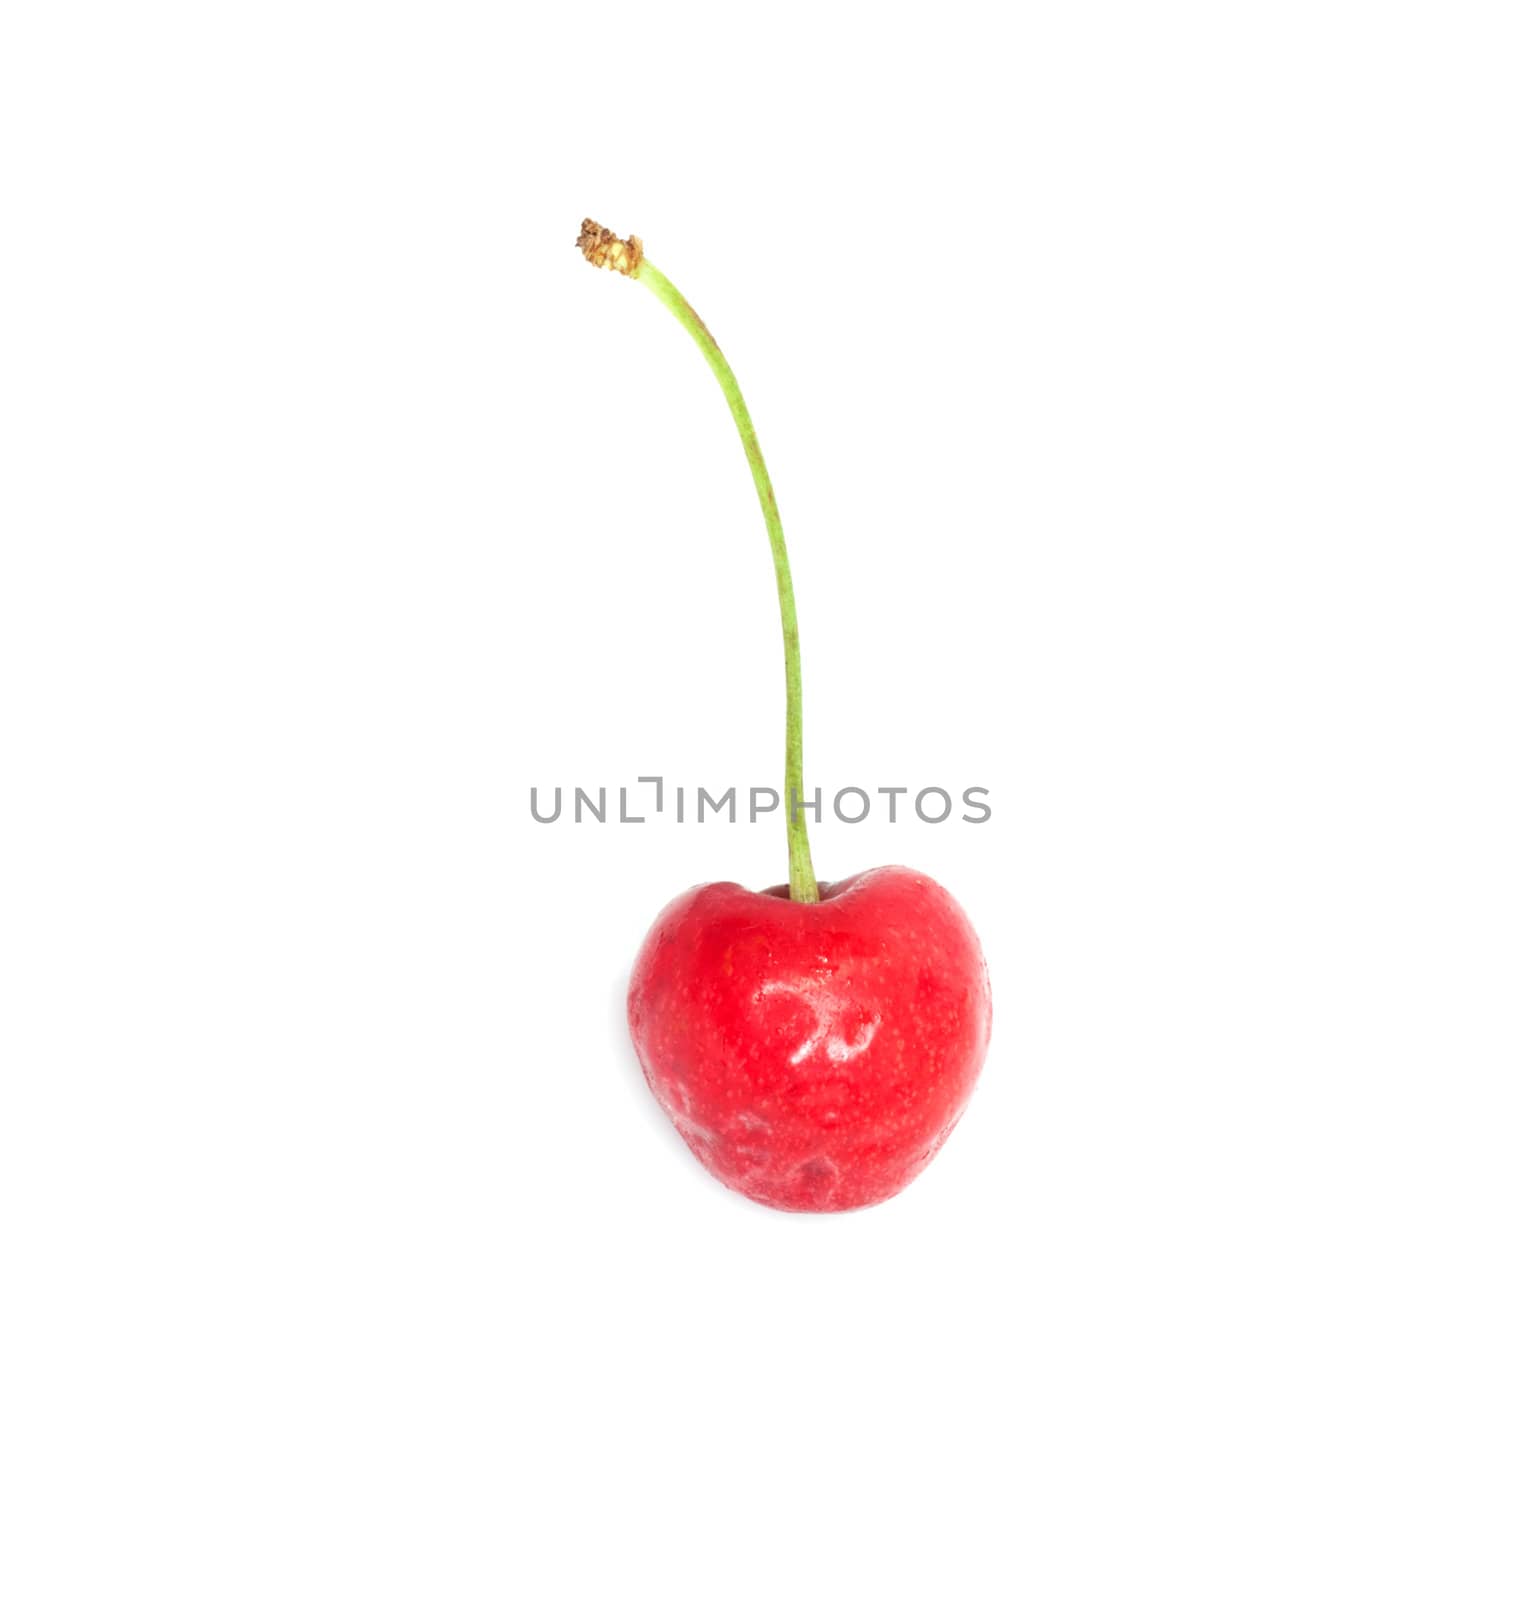 A ripe, juicy cherry 